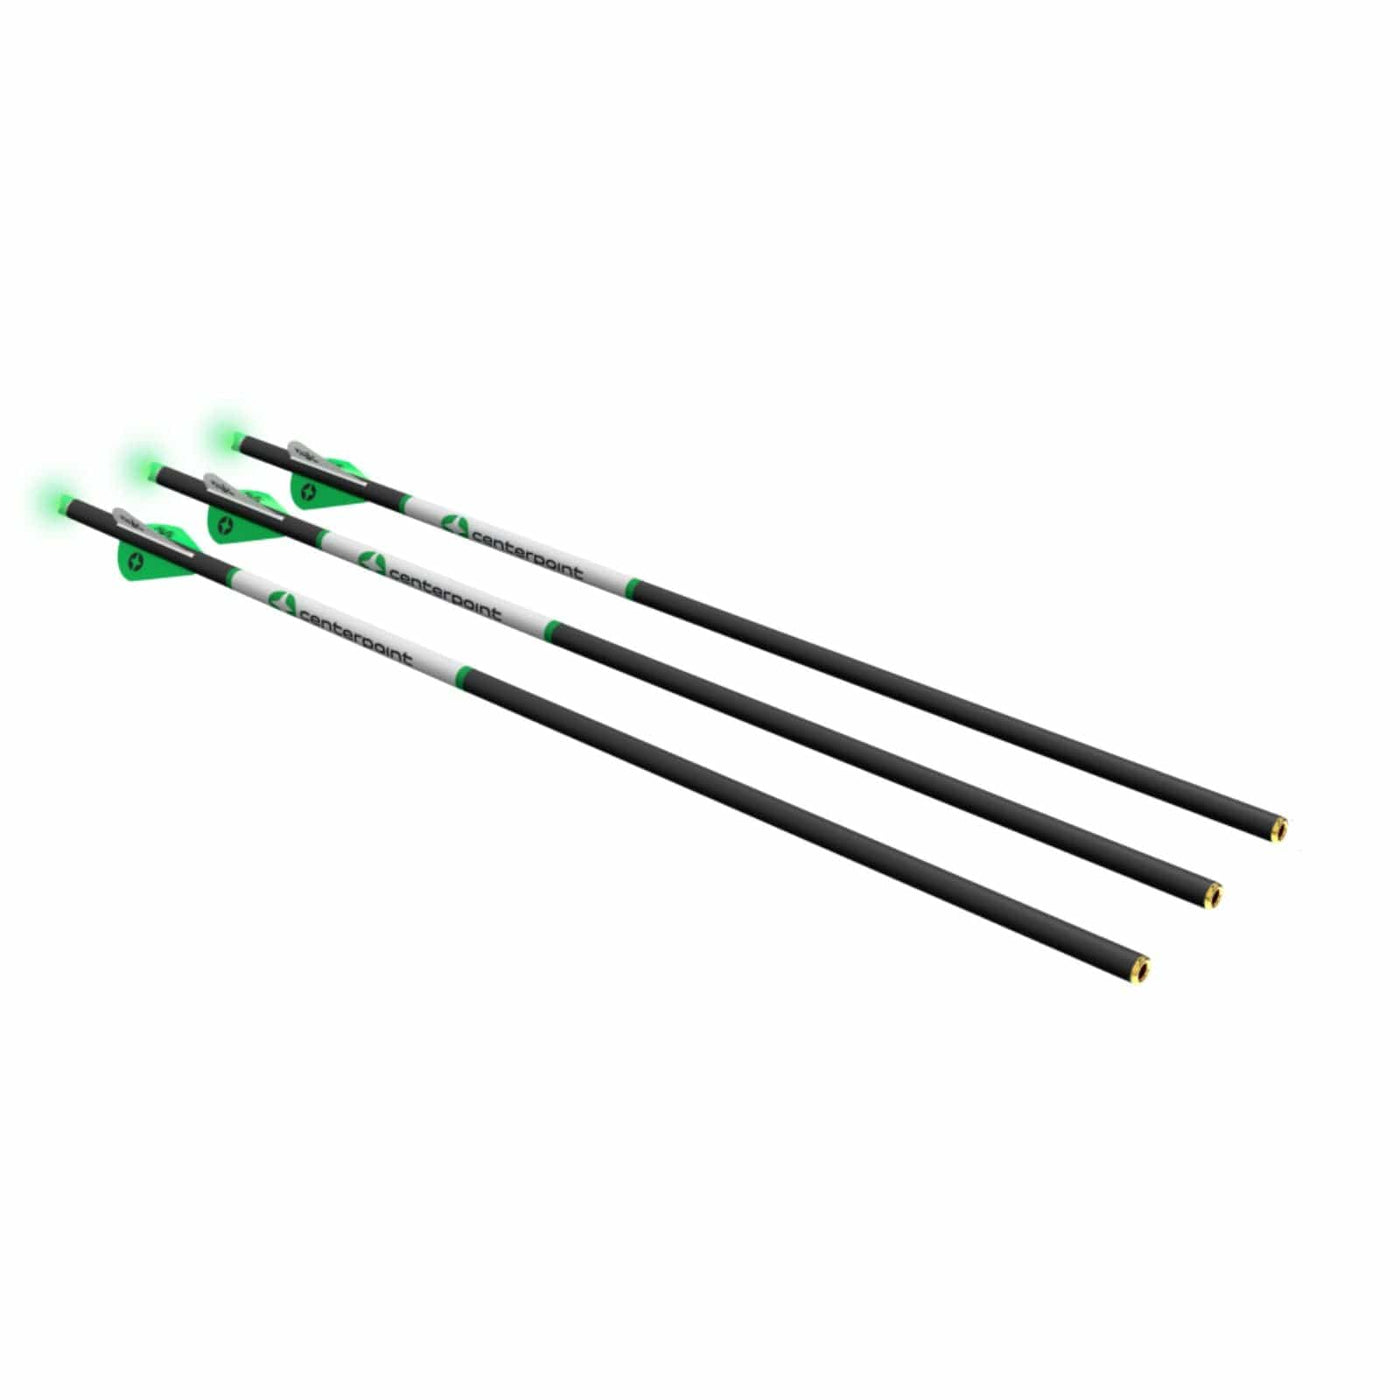 CenterPoint CenterPoint Premium 20 inch Arrow w Lighted Nocks Archery